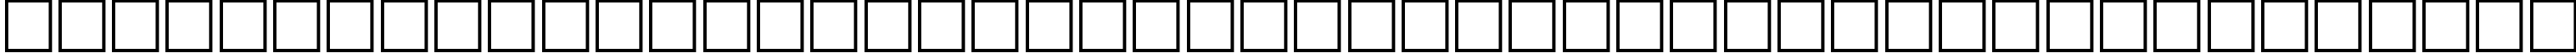 Пример написания шрифтом Japanese Generic1 текста на белорусском